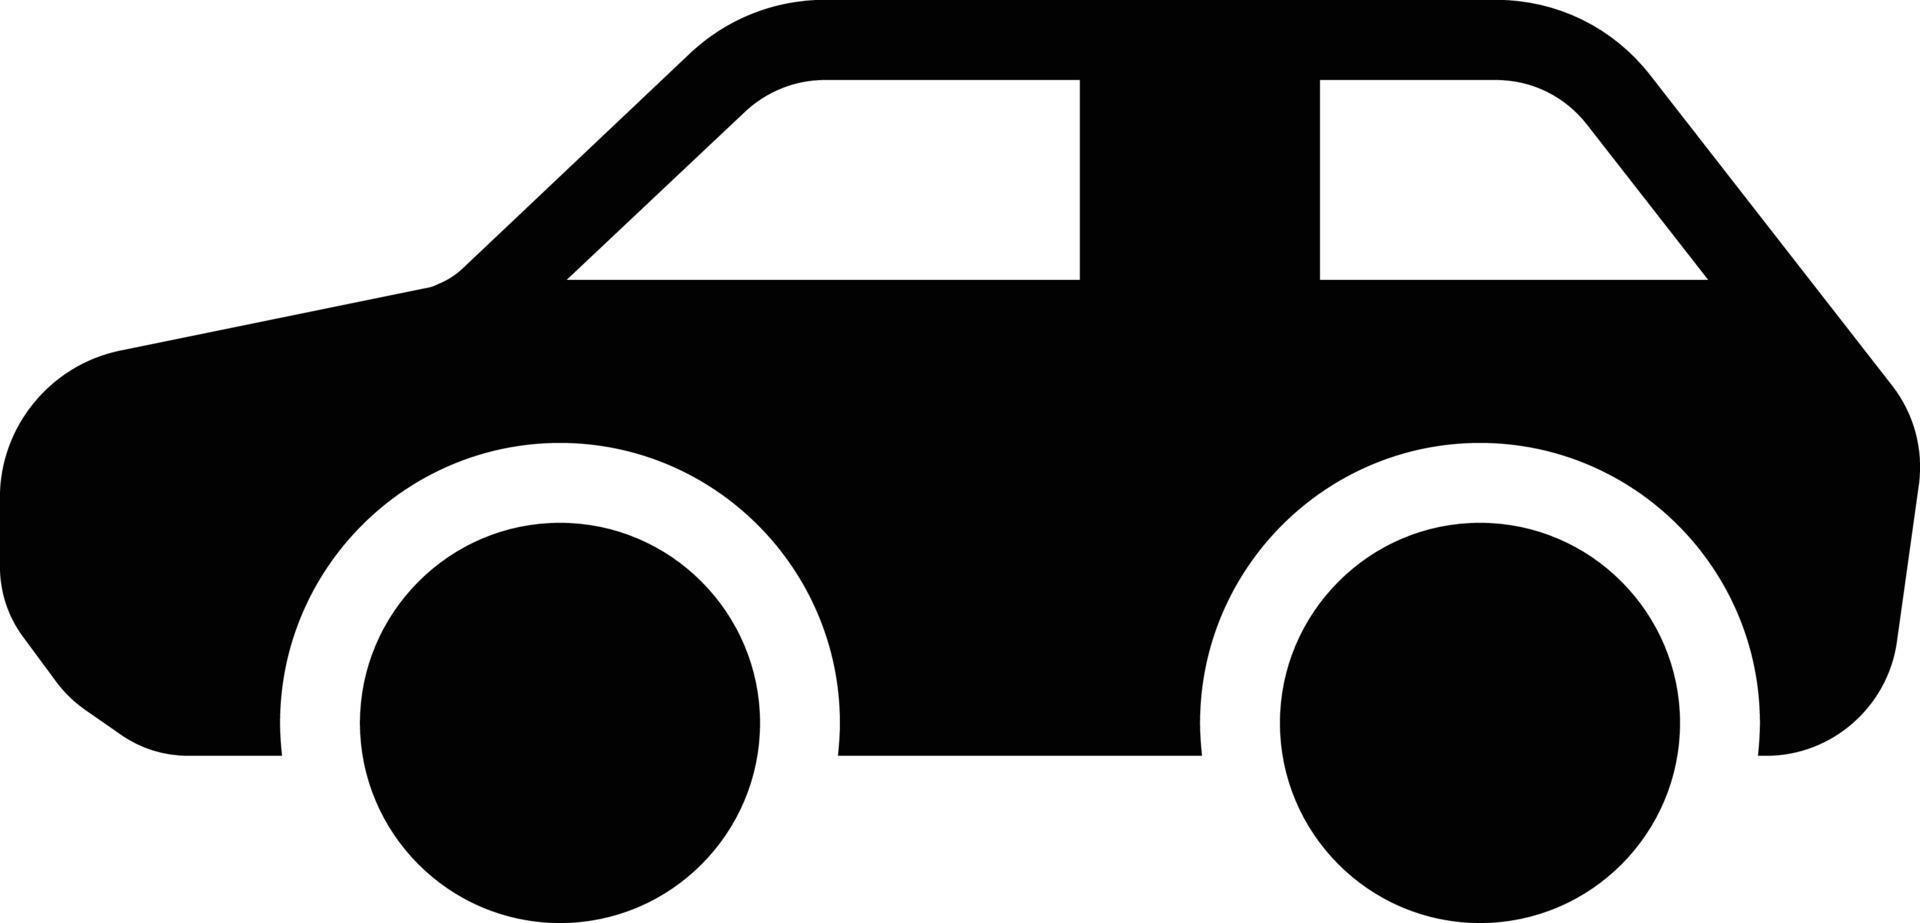 taxi vektor illustration på en bakgrund. premium kvalitet symbols.vector ikoner för koncept och grafisk design.